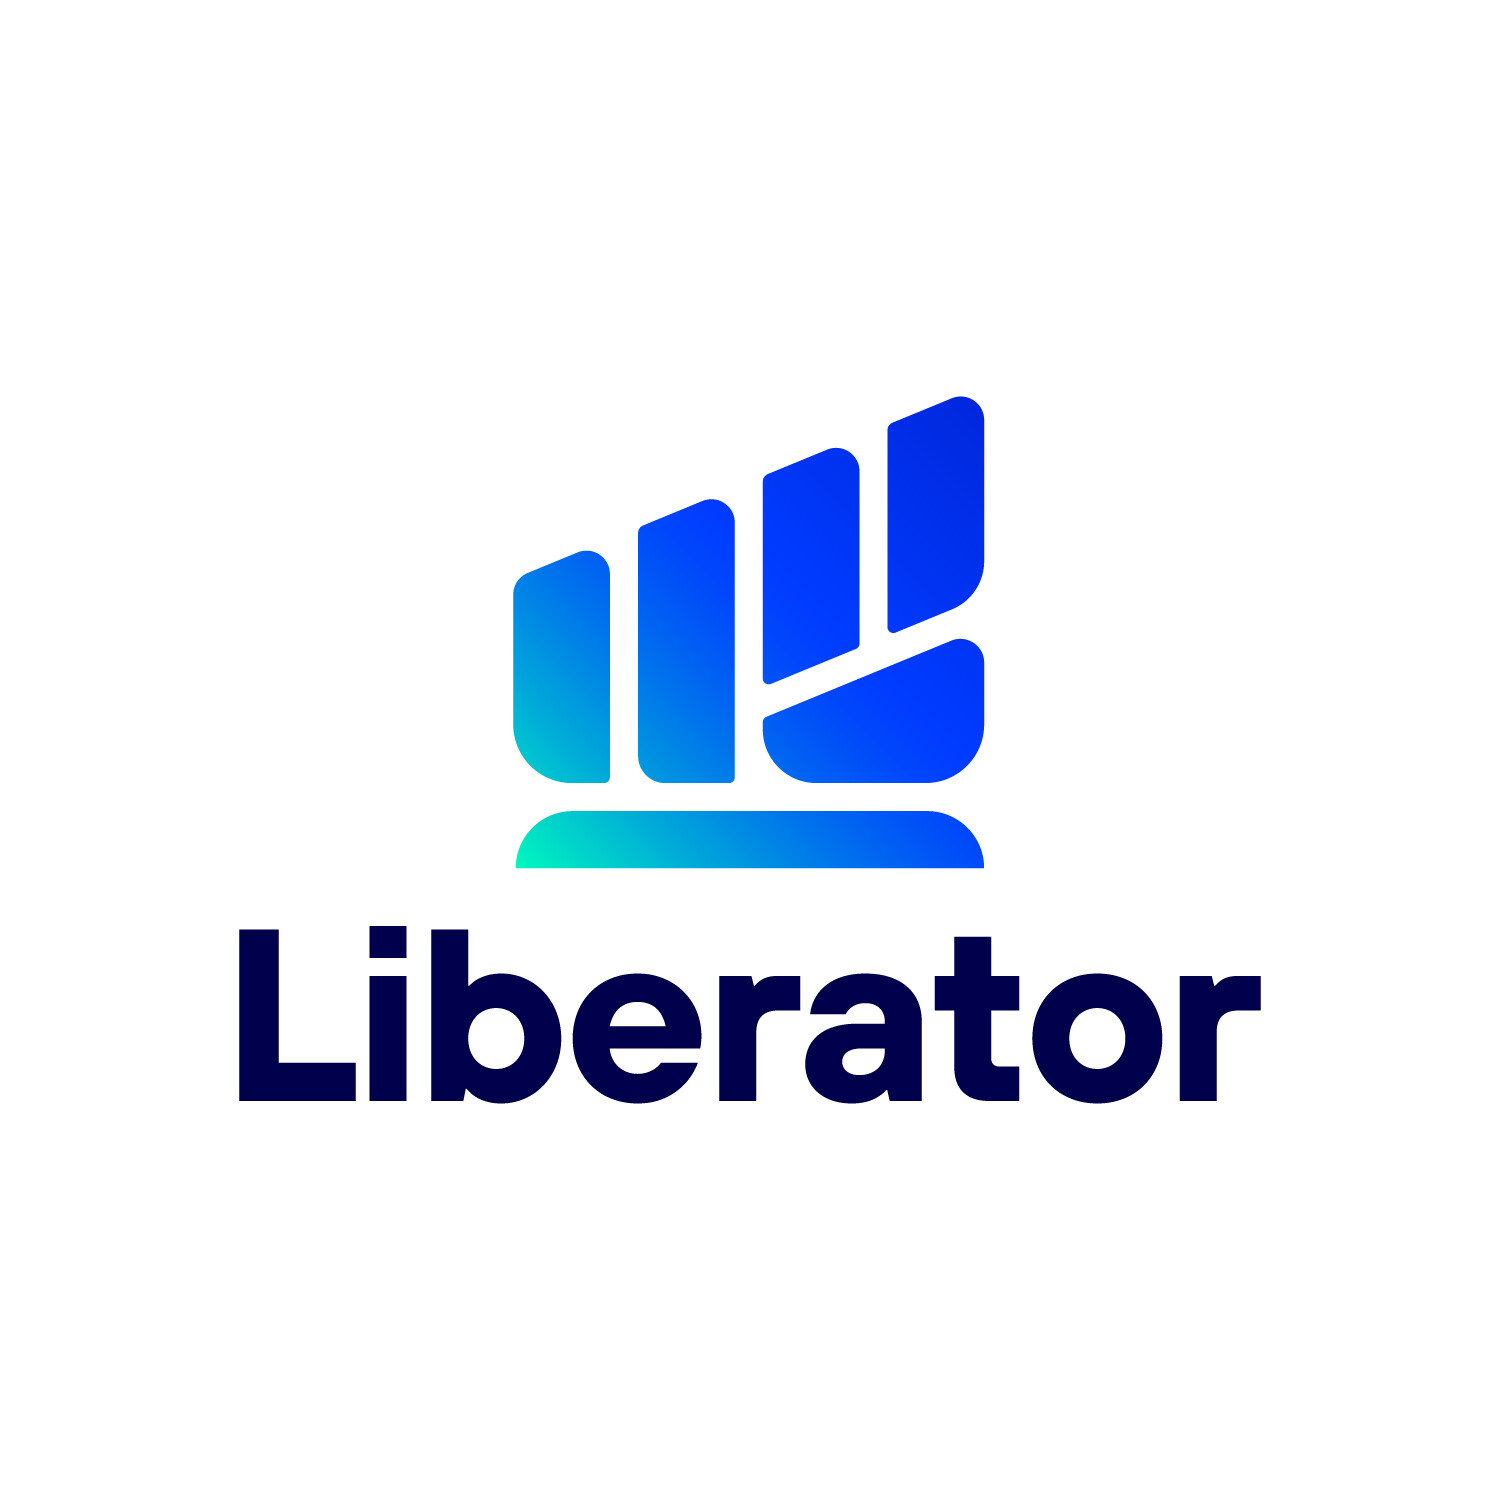 สุดฮอต! นักลงทุนตอบรับ "บล.Liberator" ดีเกินต้าน ยอดดาวน์โหลดทะลุ 100,000 ภายใน 2 เดือน!! พร้อมเปิดเทรด TFEX ฟรีค่าคอม 3 เมษายน นี้!